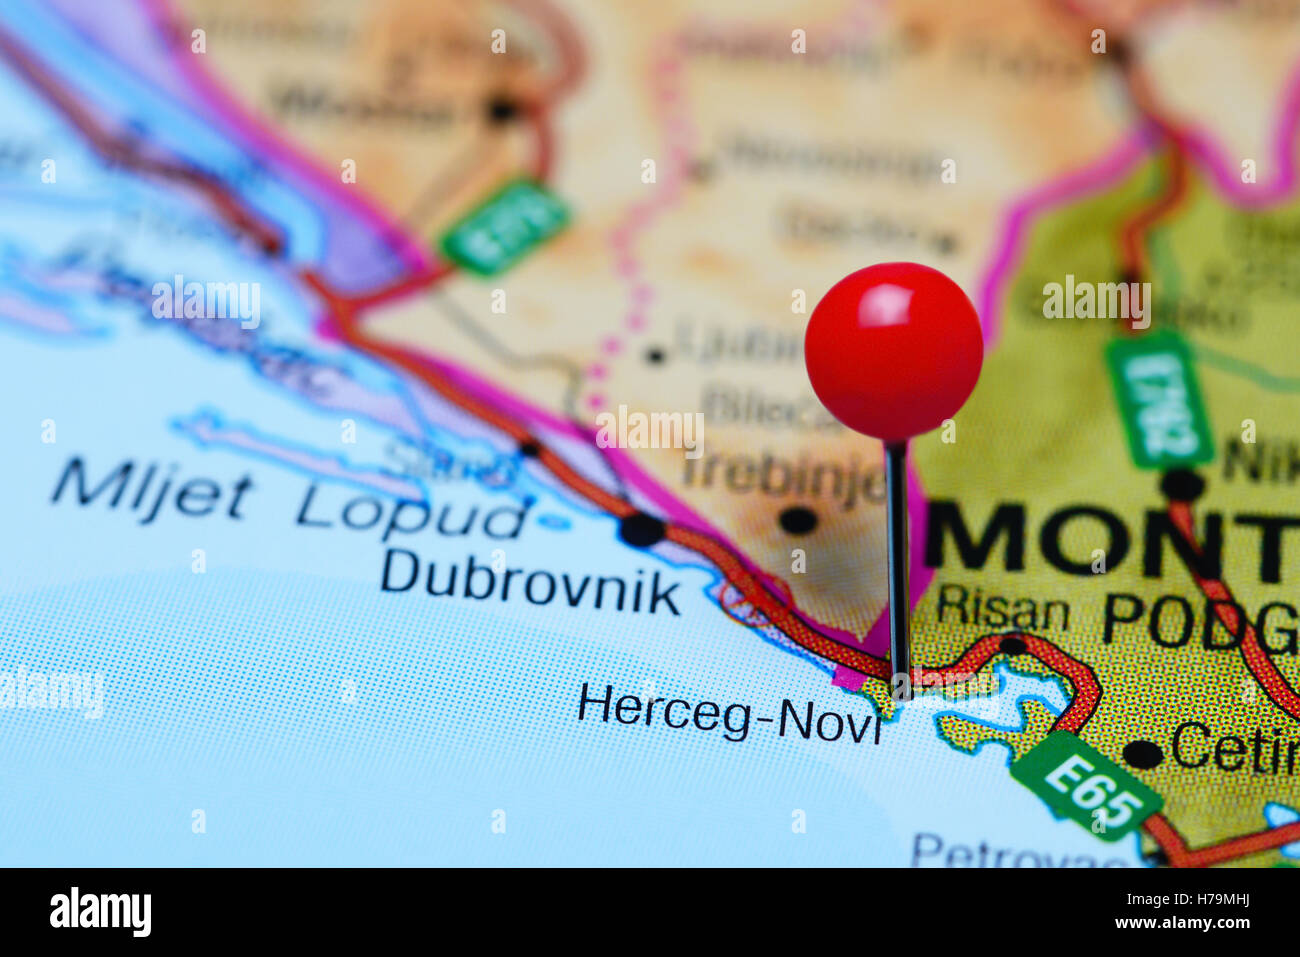 Herceg-Novi anclado en un mapa de Montenegro Foto de stock